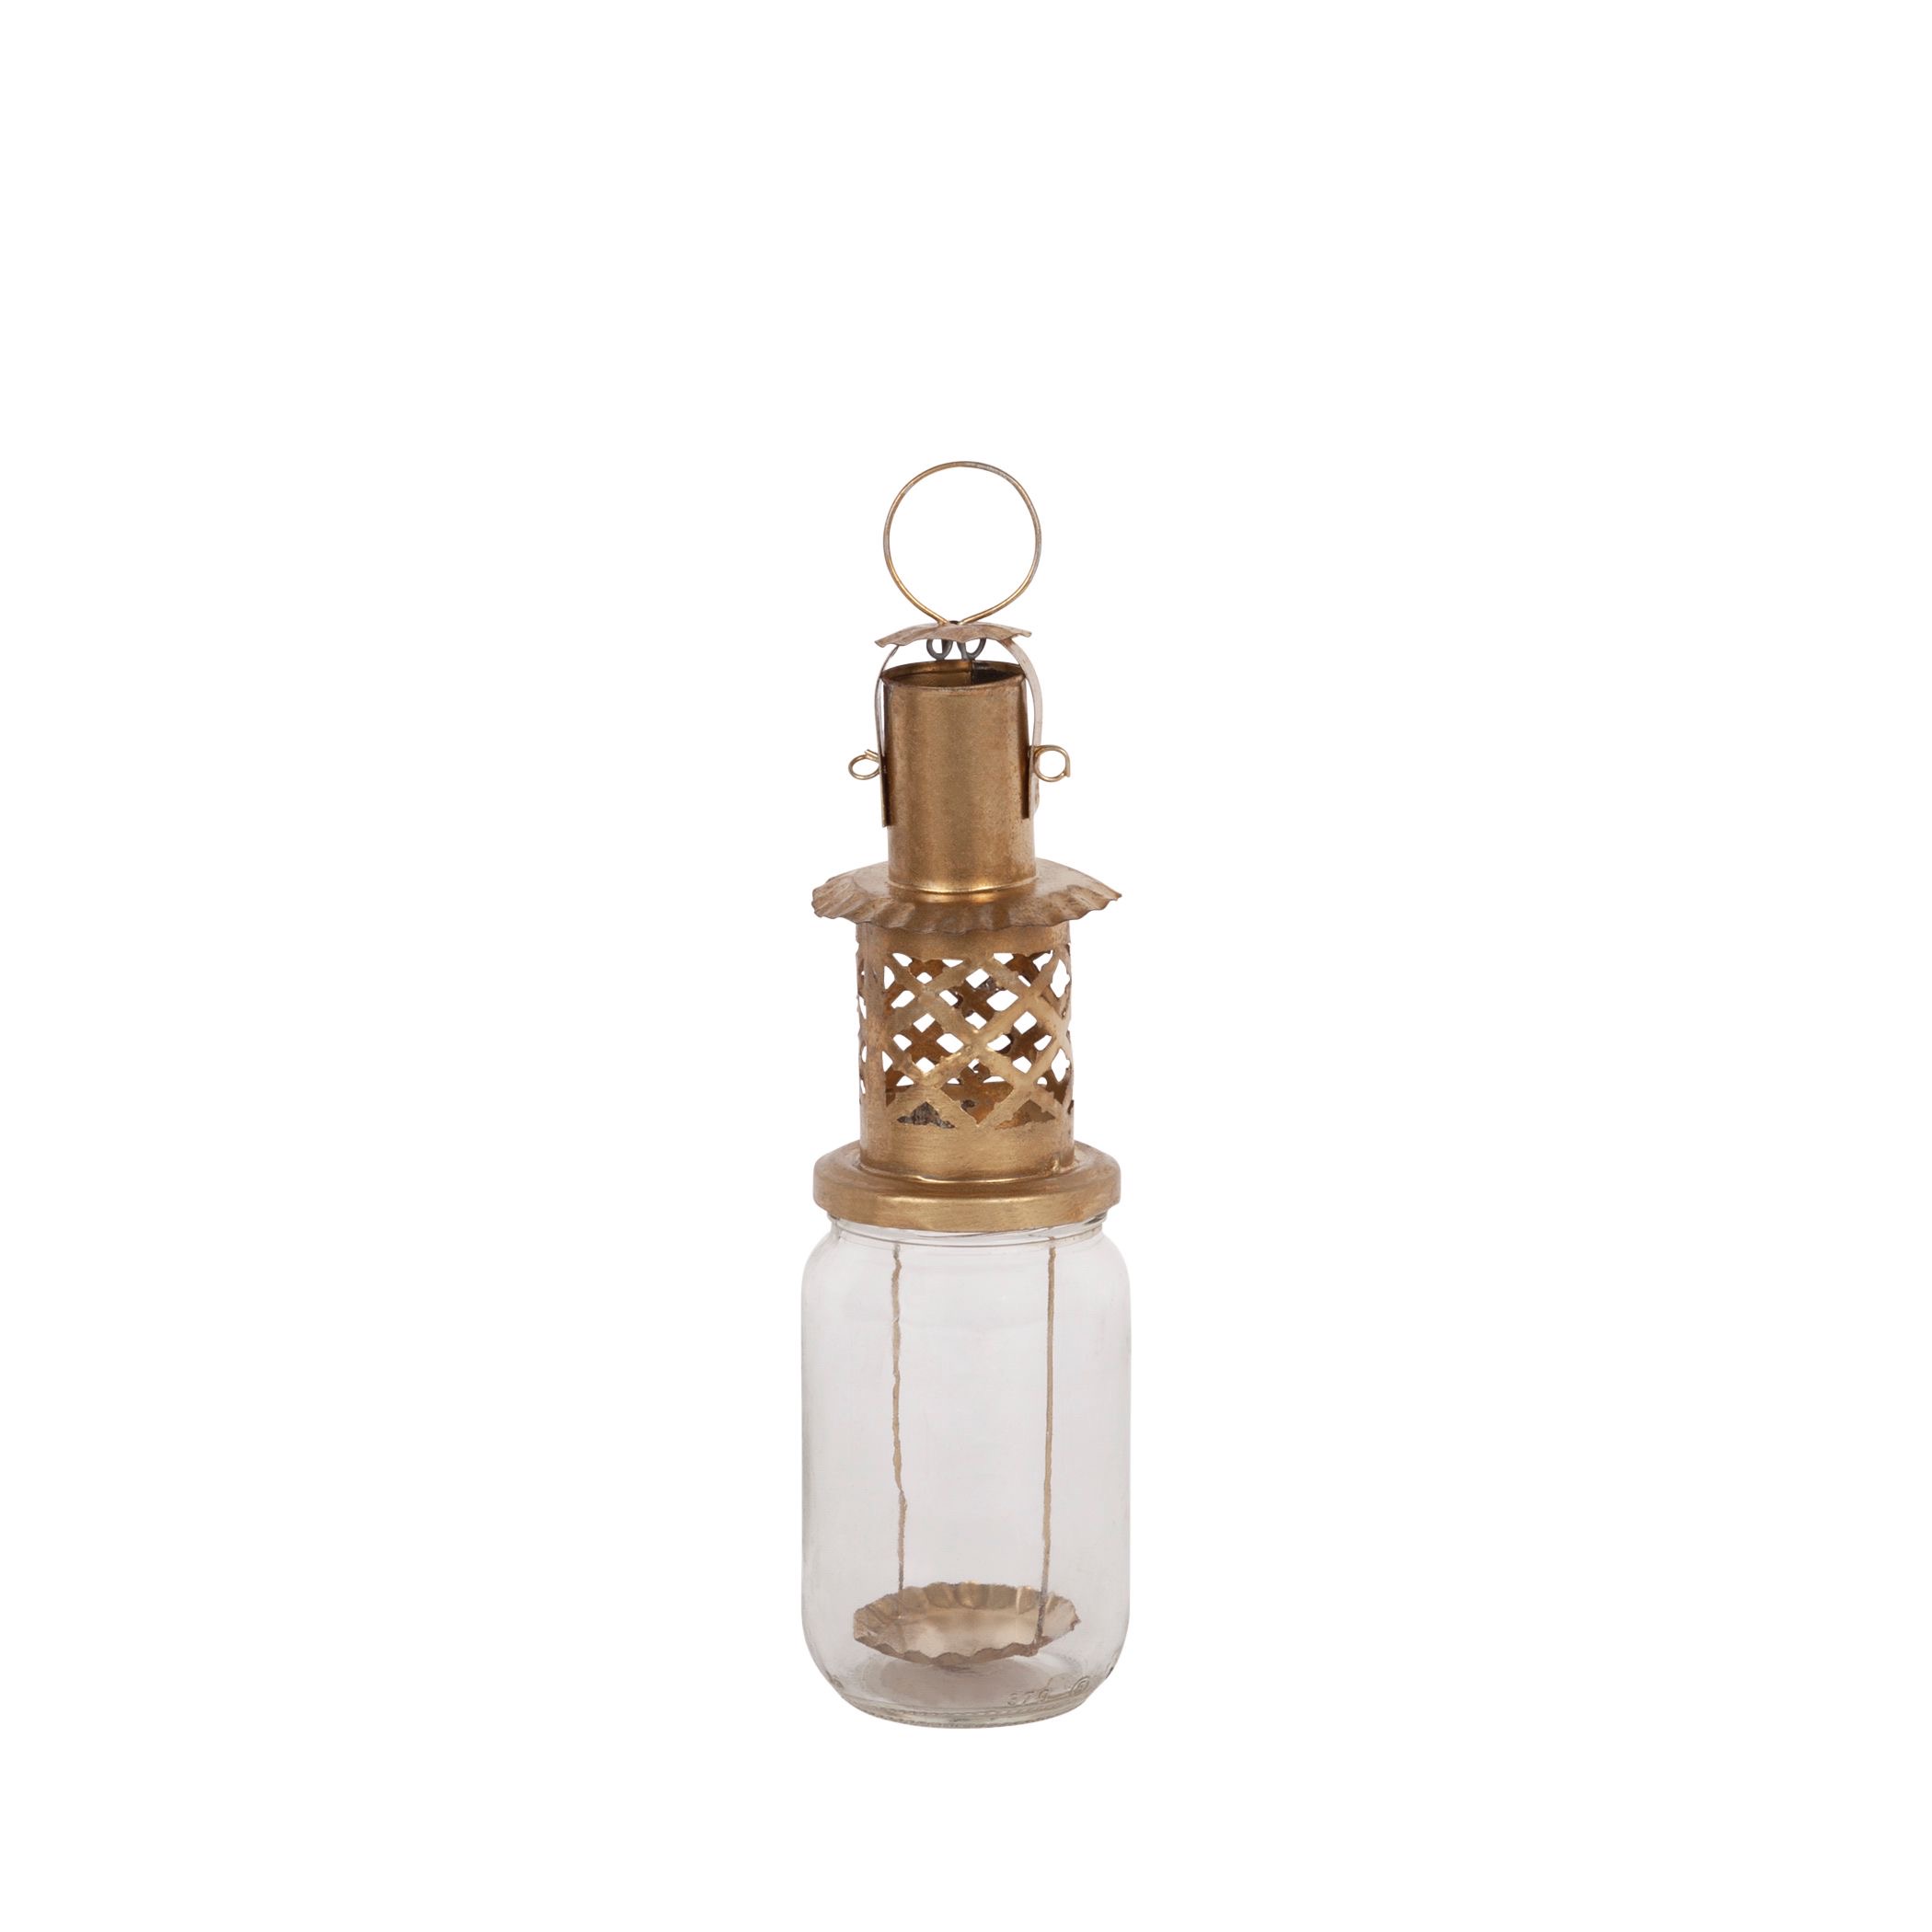 bescherming Zorg Voorschrift Confiture lantaarn goud | Household Hardware - RADIJS Conceptstore